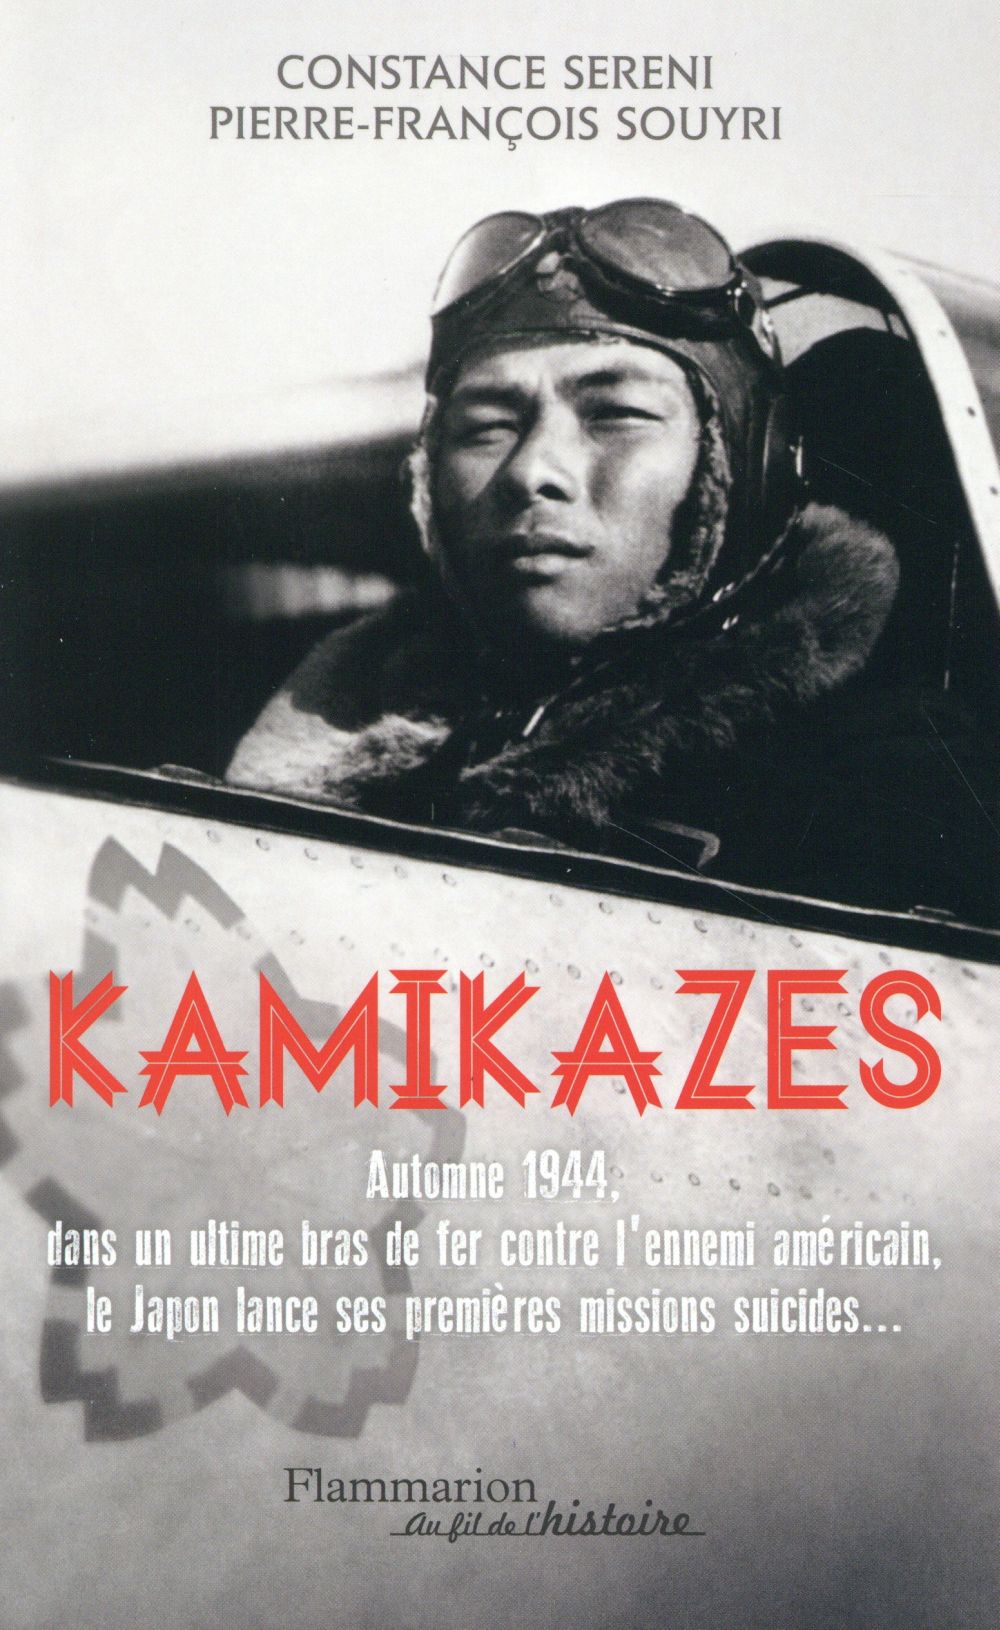 KAMIKAZES - MISSIONS SUICIDES AU JAPON (1944-1945)